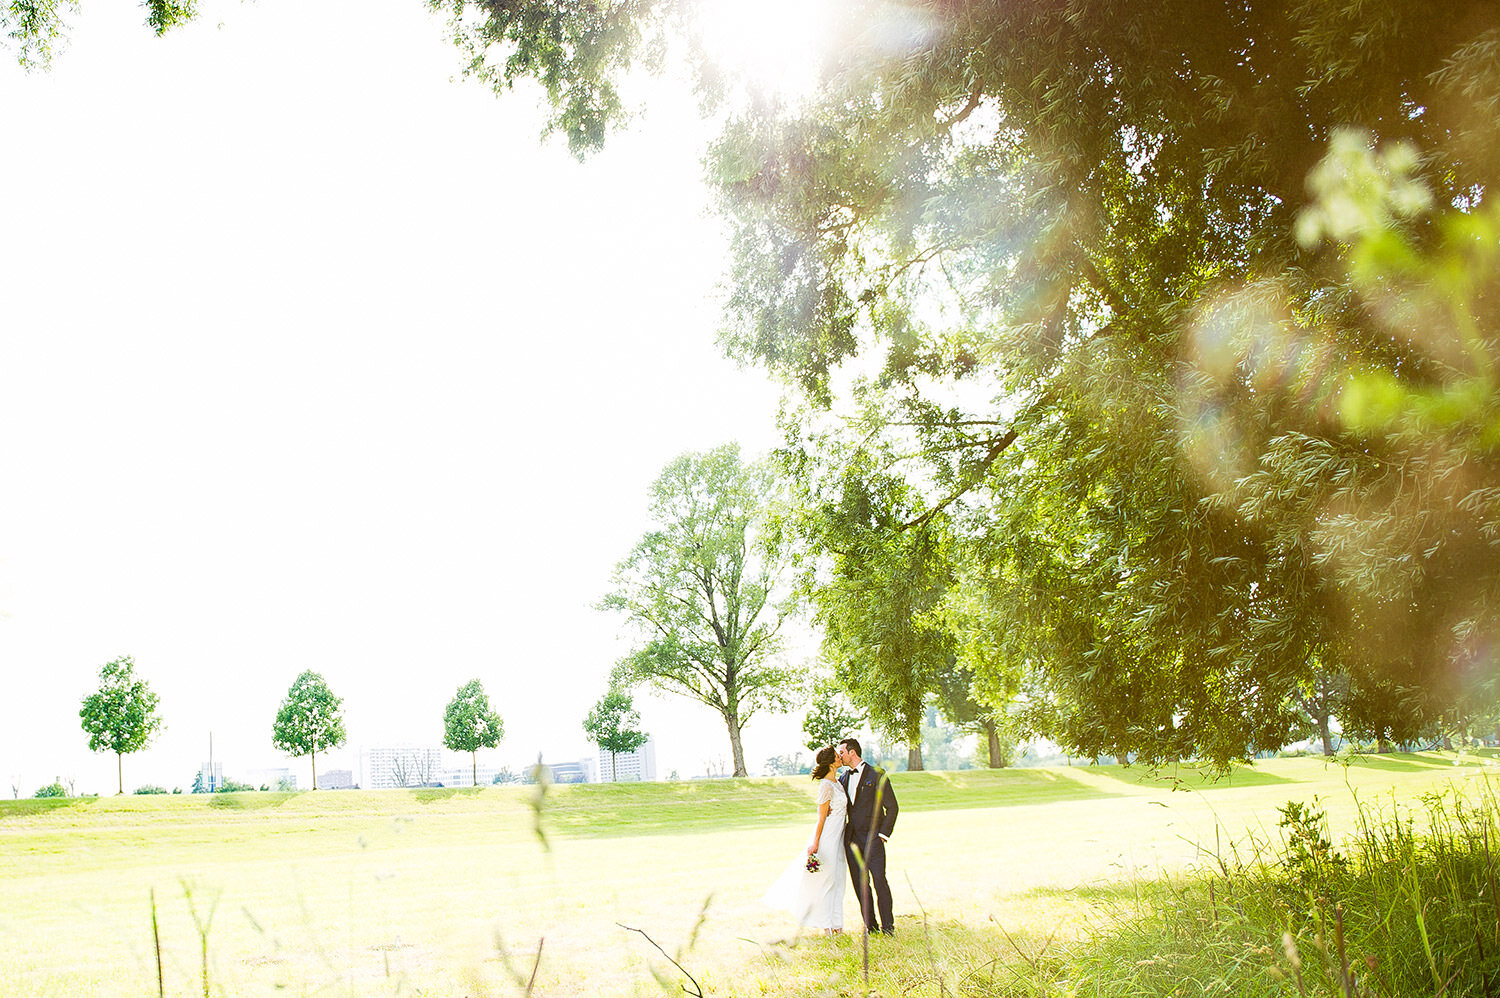 Braut und Bräutigam küssen sich in einem Feld